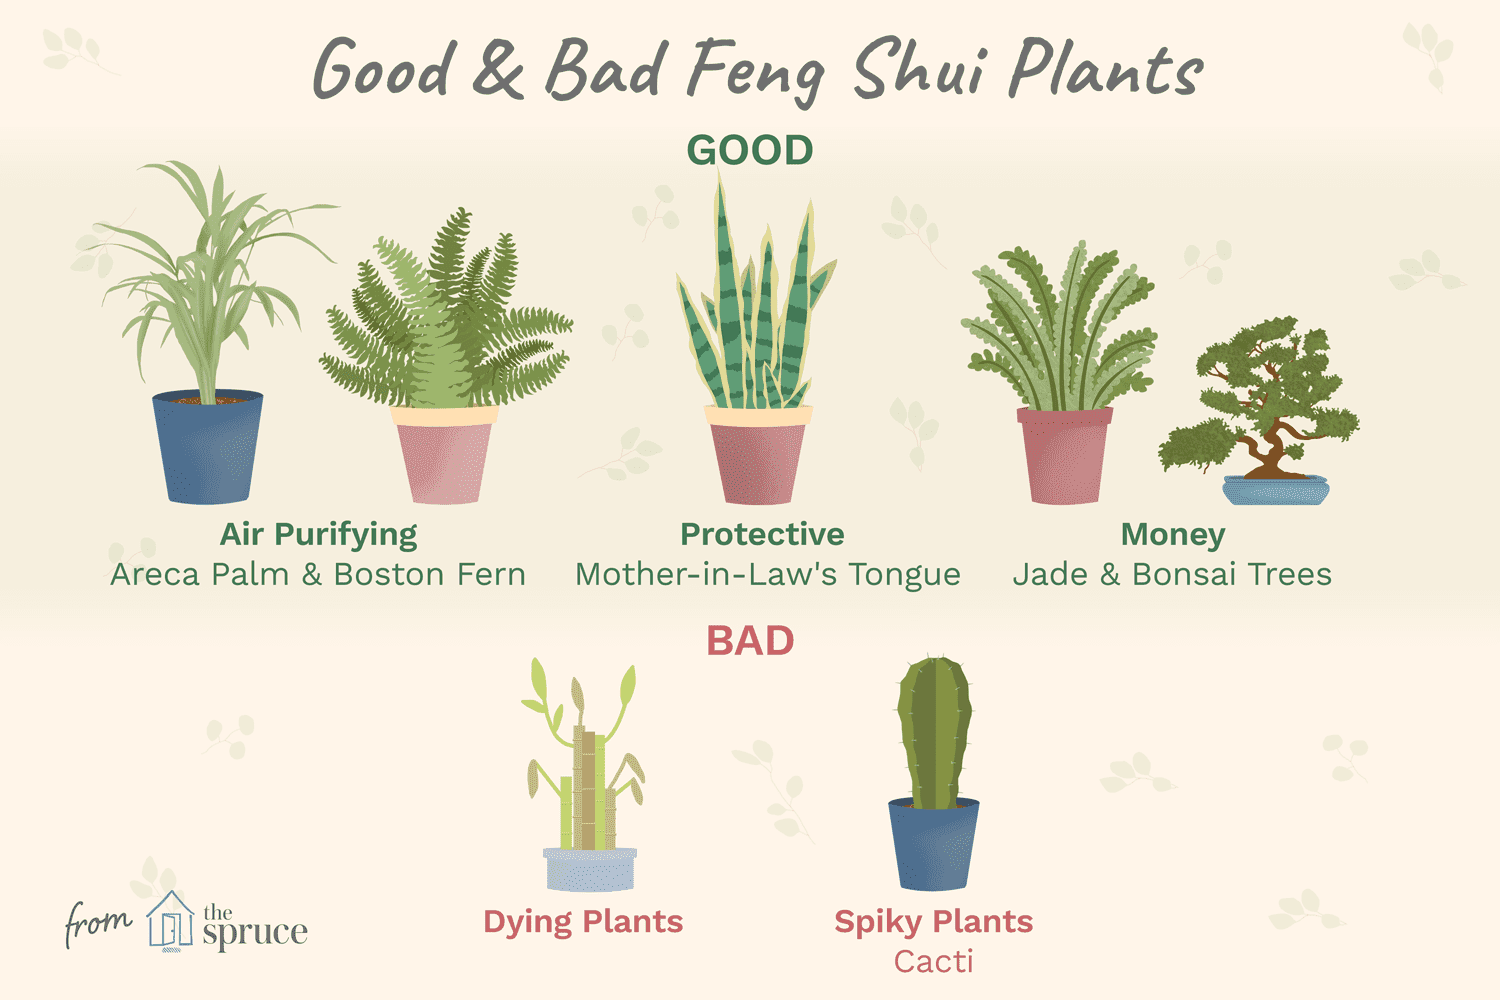 Les meilleures plantes du Feng Shui